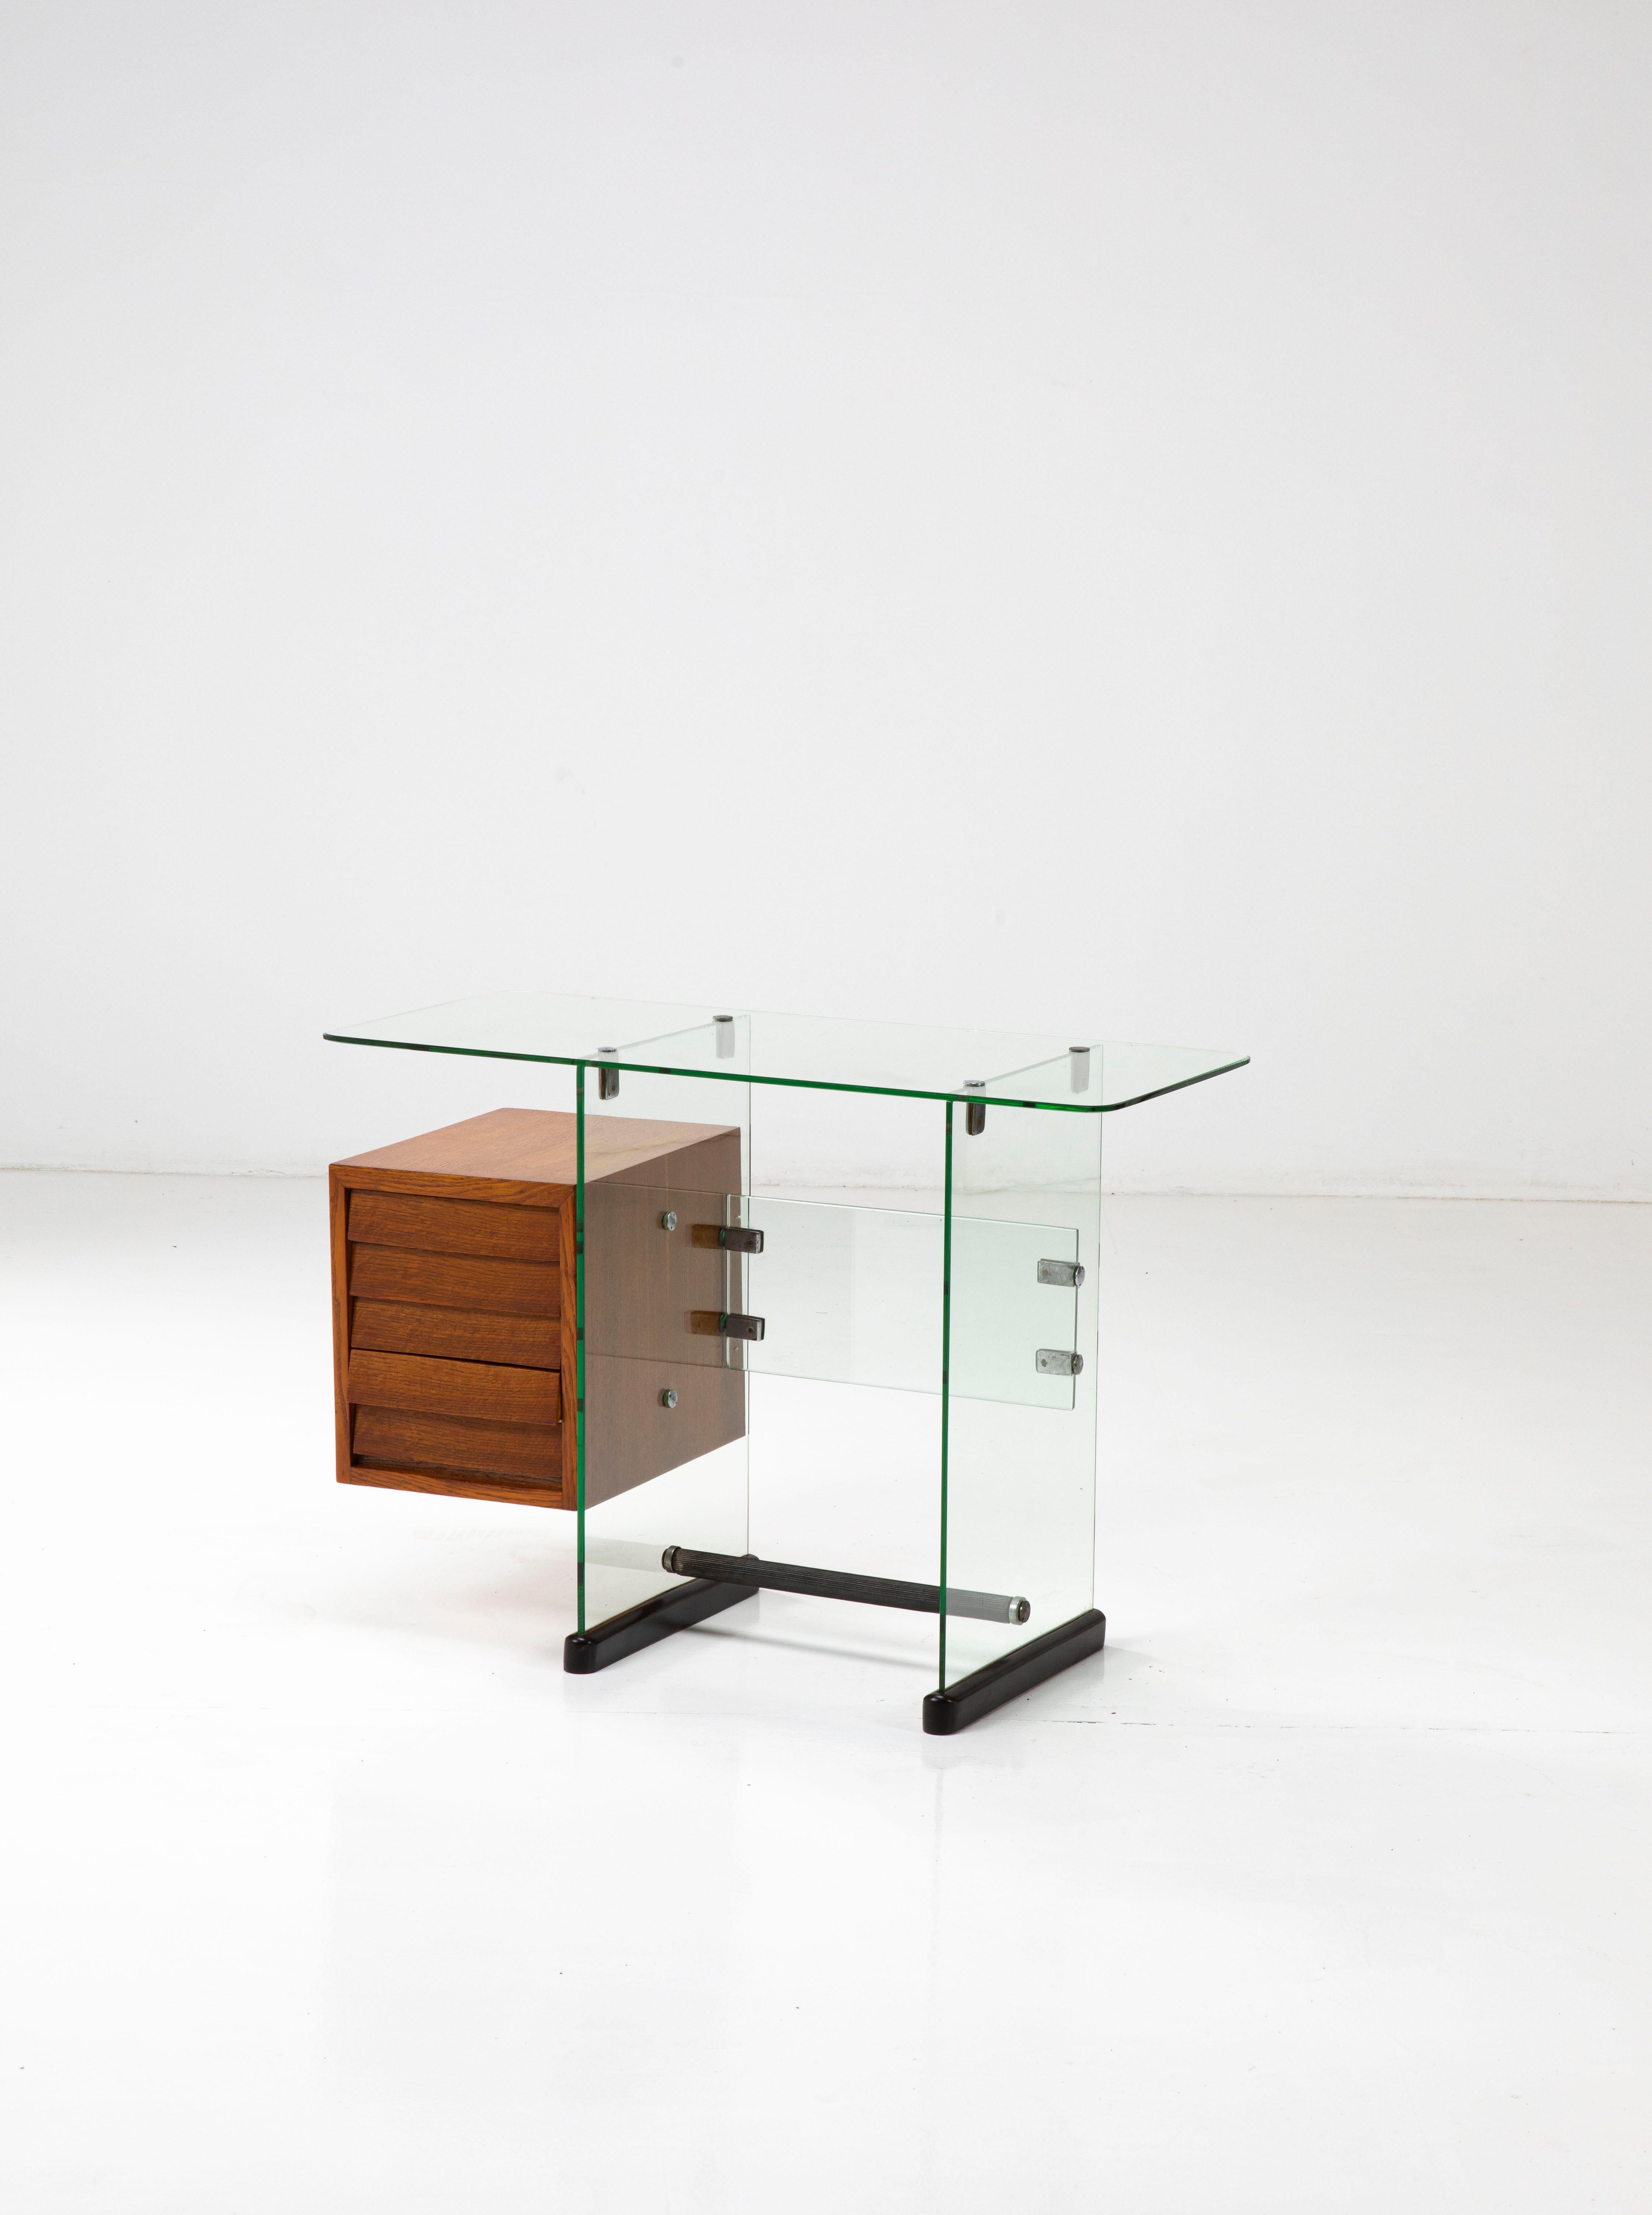 Dieser elegante kleine Schreibtisch besteht aus gehärteten Glasscheiben, die durch Messing- und Metallverbindungen miteinander verbunden sind, und aus einer Holzkommode, ebenso wie die beiden Sockel aus Holz bestehen. 

Das Design dieses Stücks ist